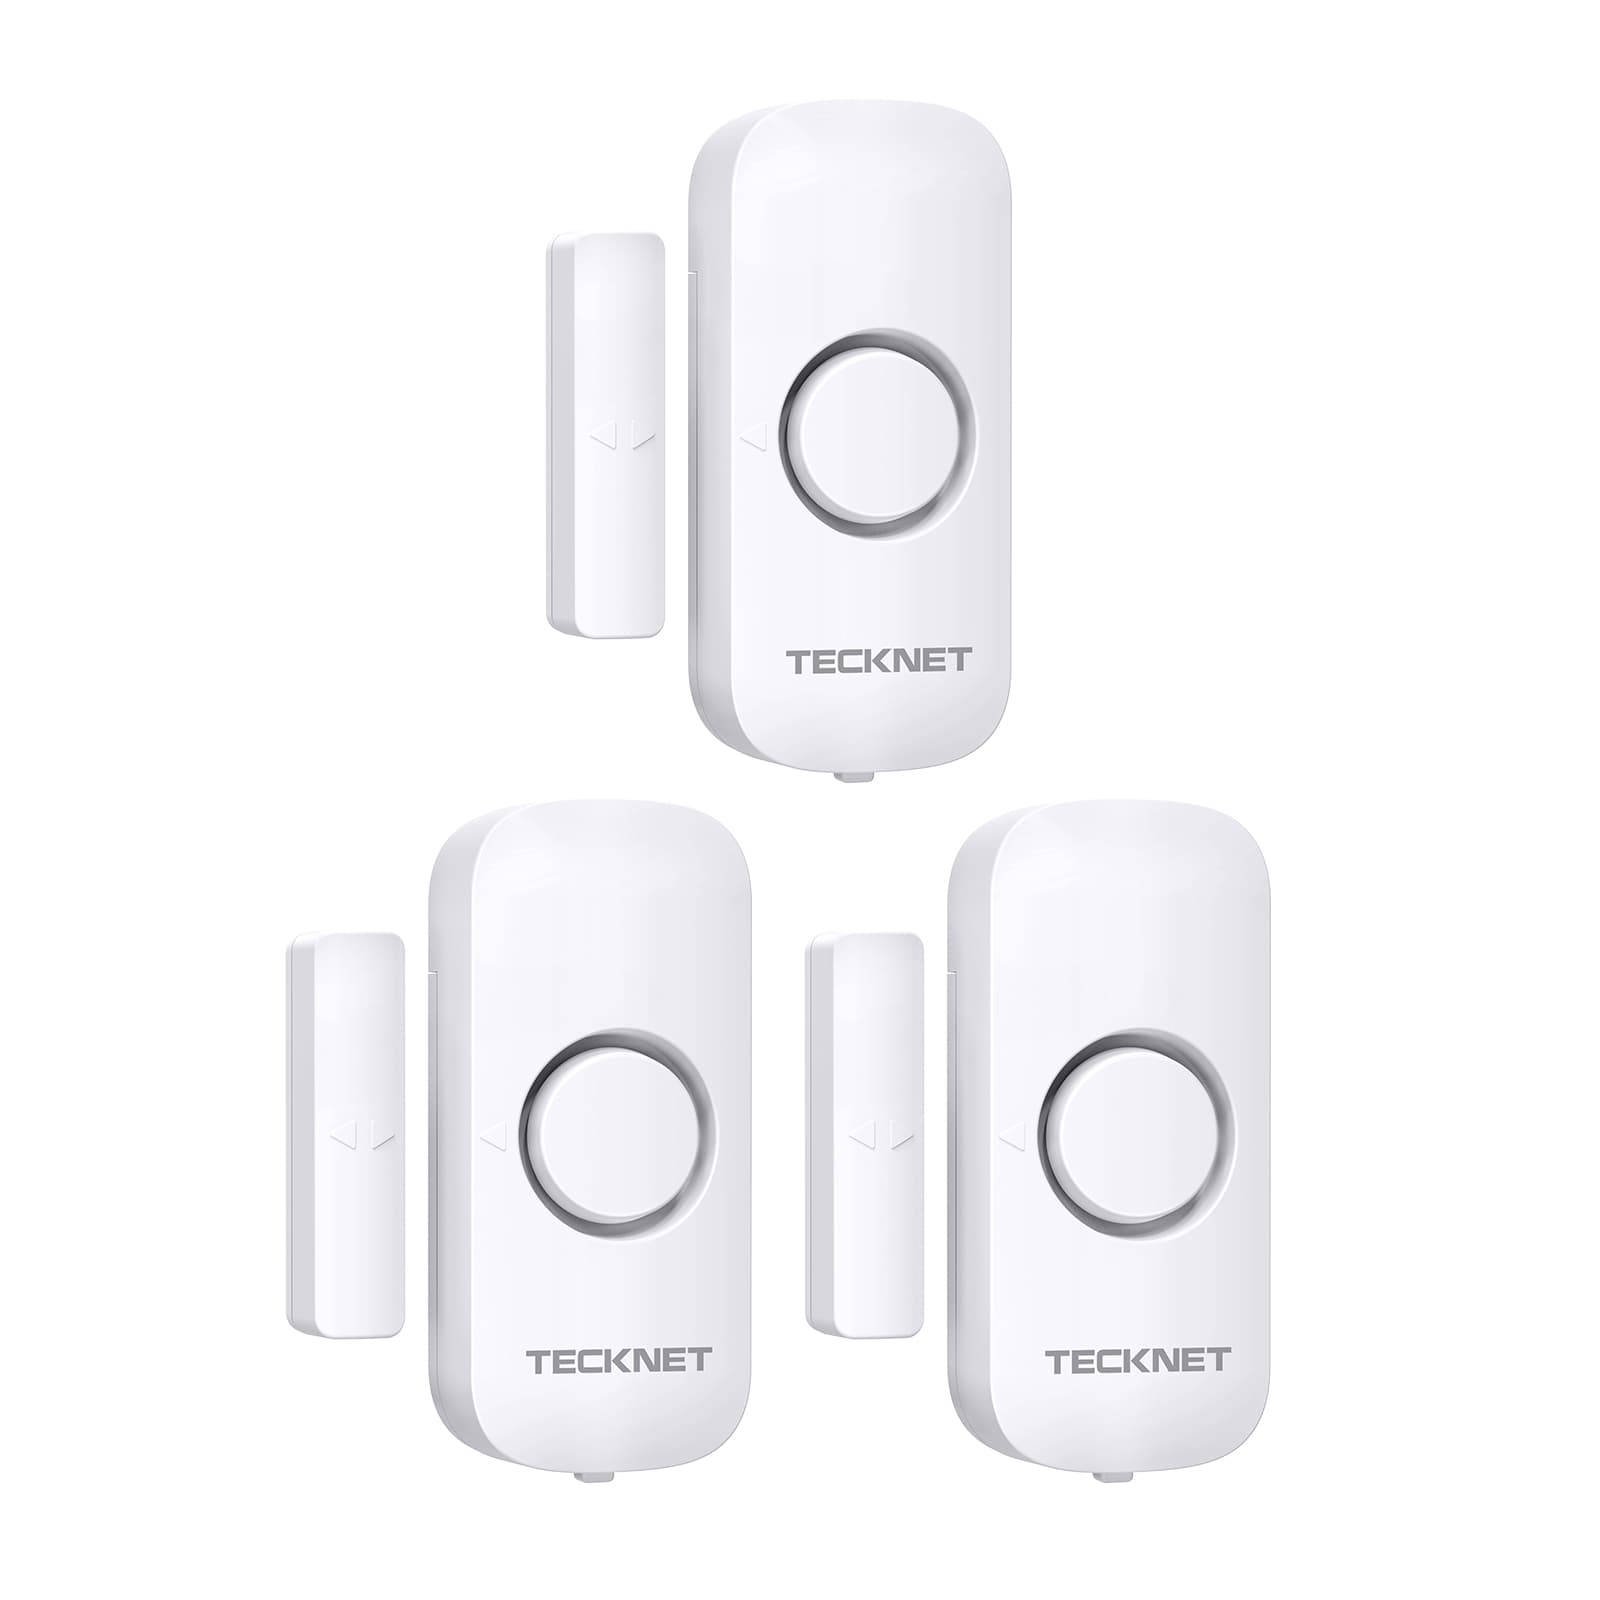 TECKNET Door Alarm Sensor, Mini Window Alarm Sensors with 3 Modes